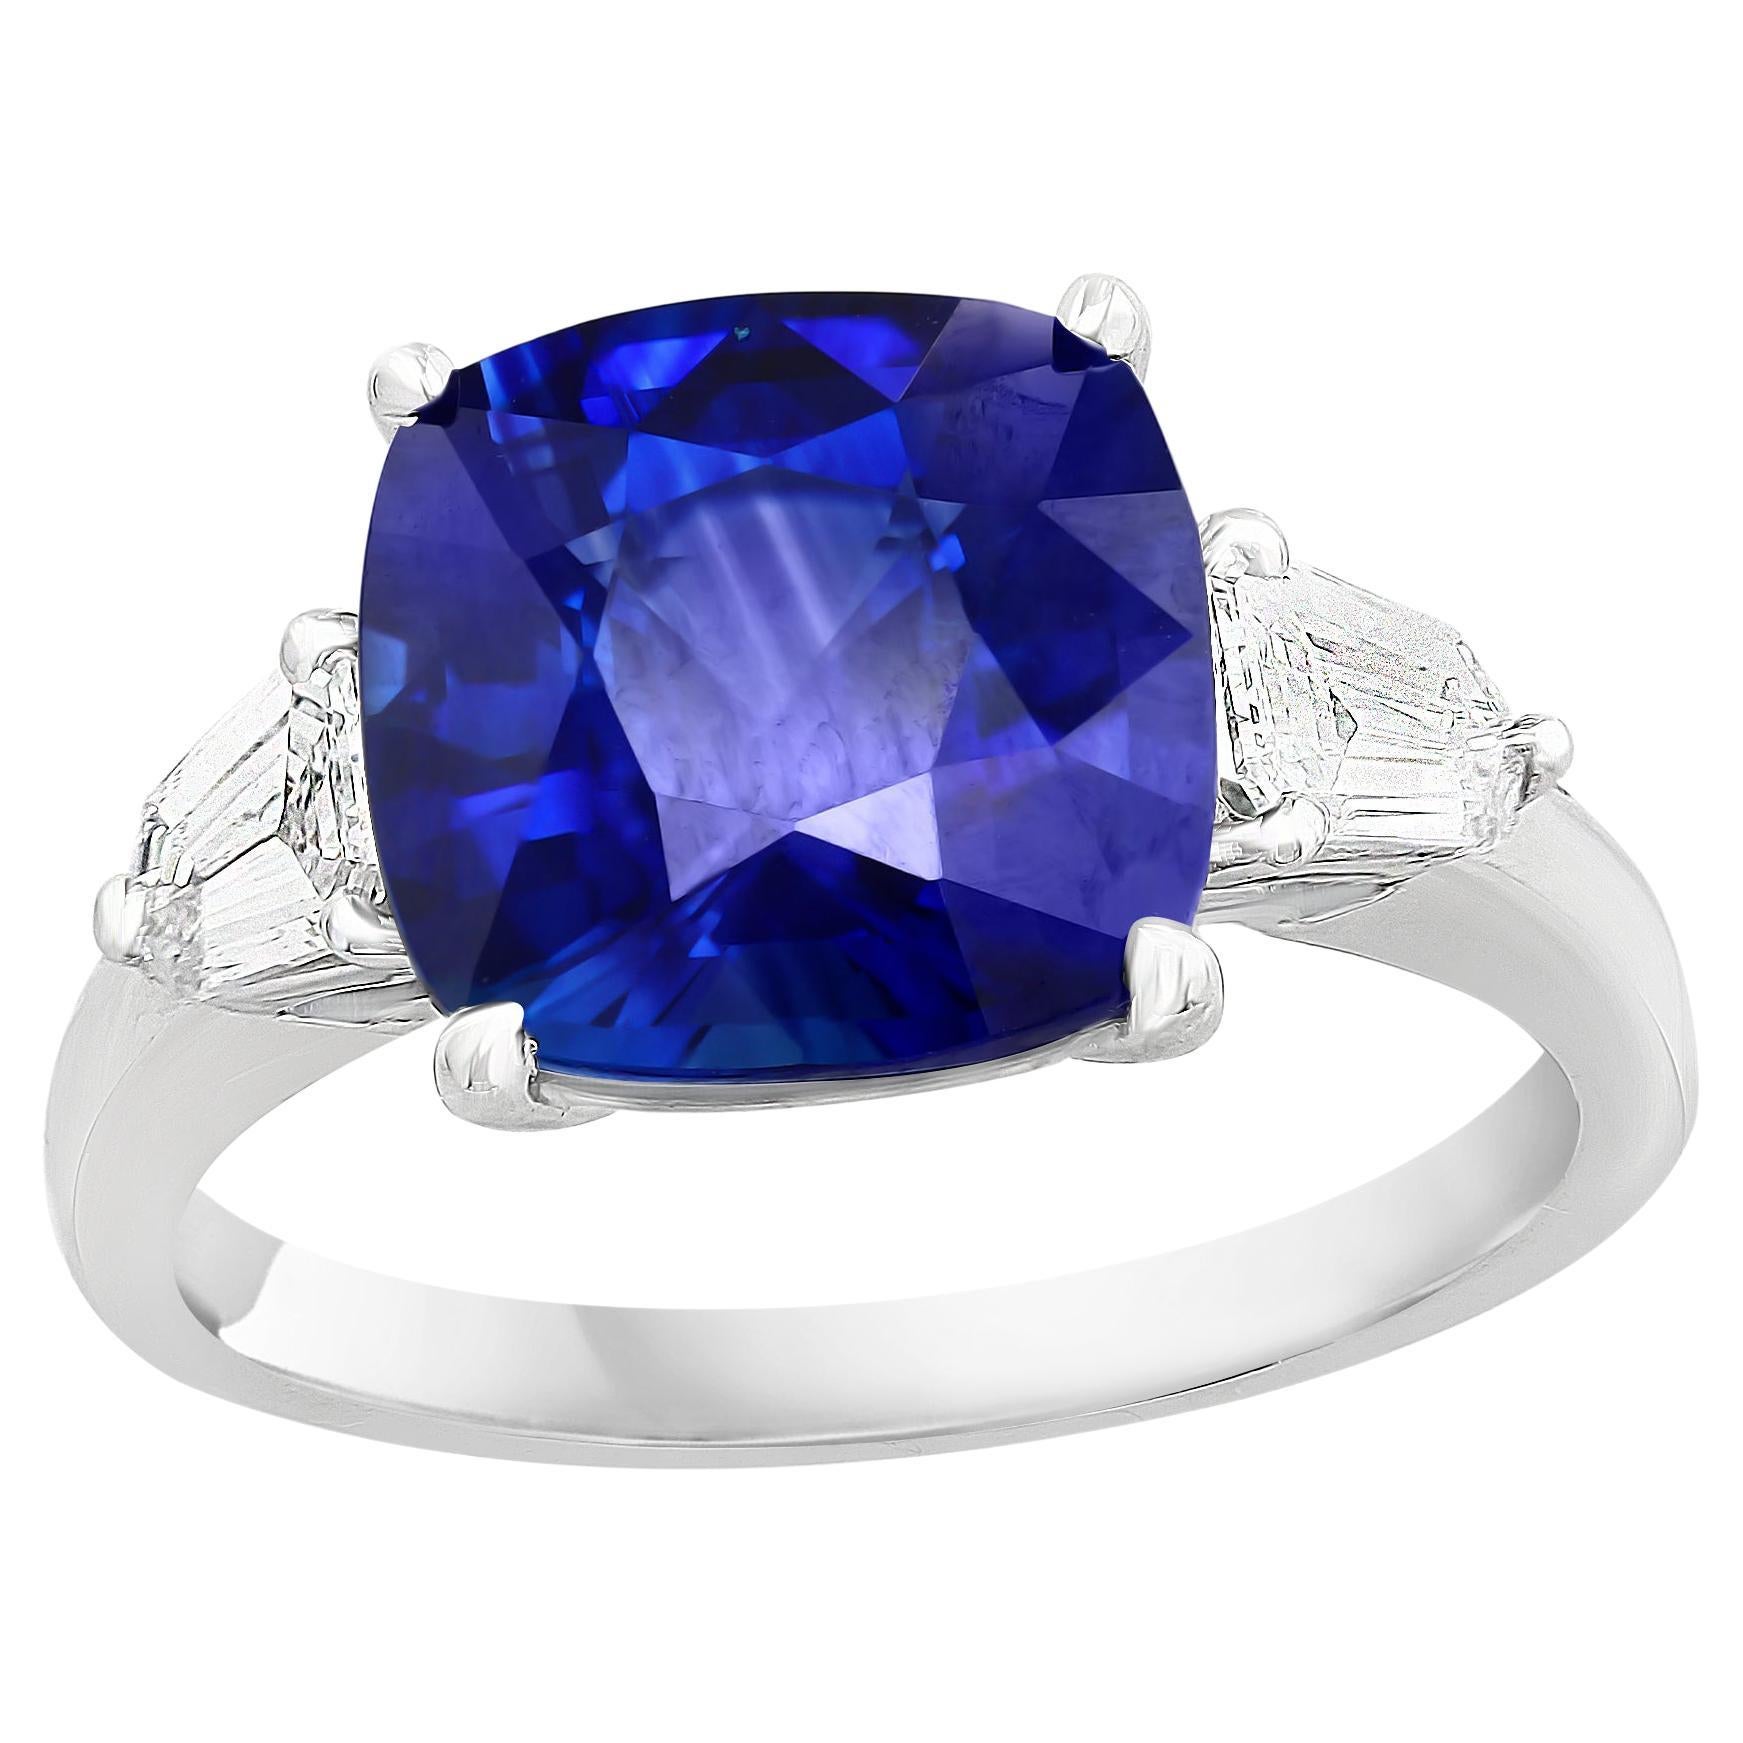 Bague à trois pierres en platine avec saphir bleu taille coussin de 4,22 carats et diamants